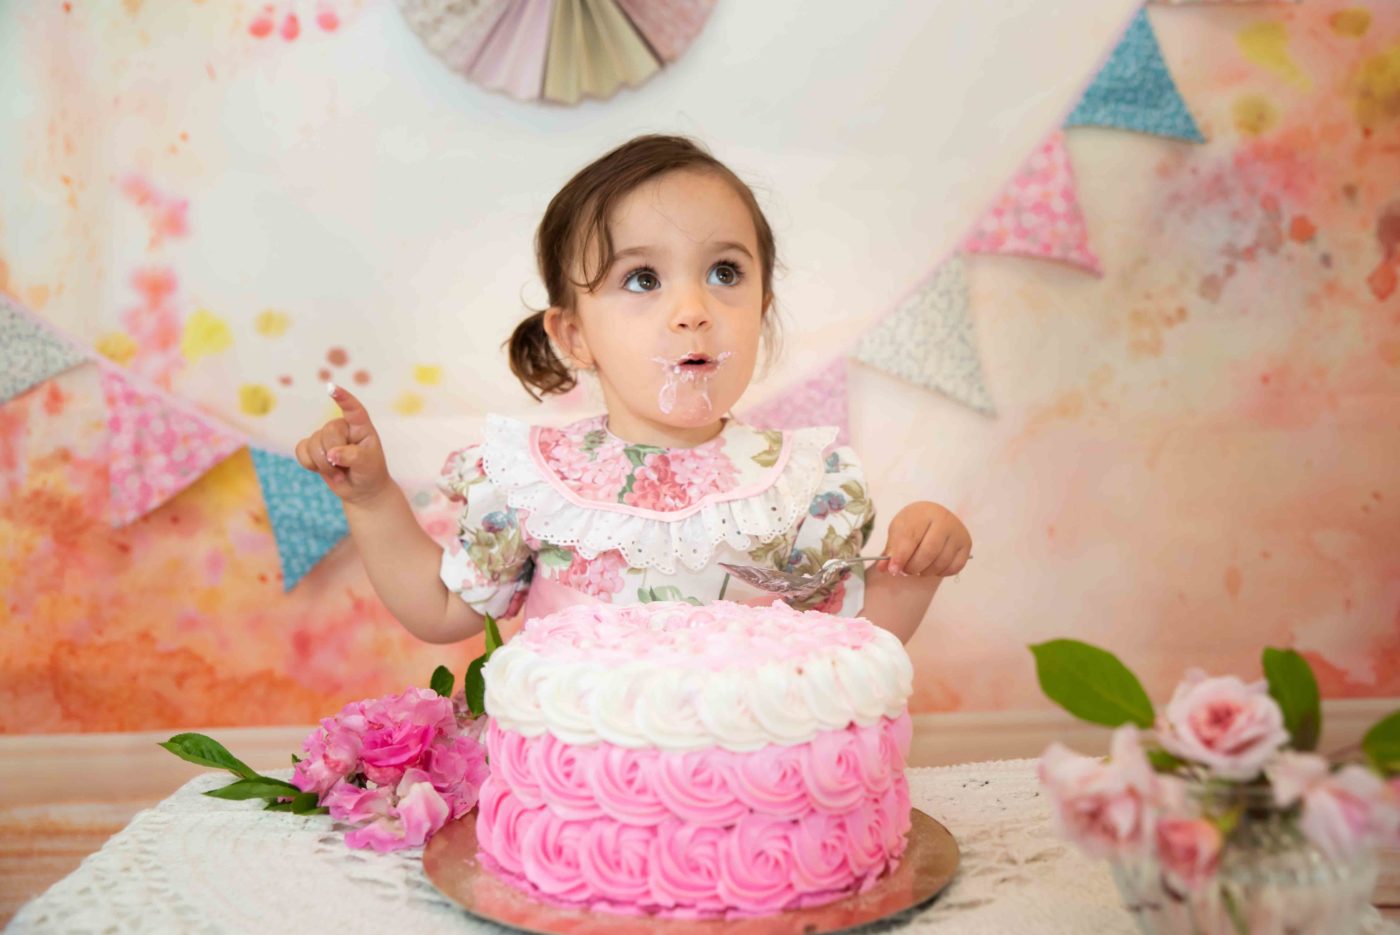 bébé qui goute son gâteau d'anniversaire photographe hautes alpes